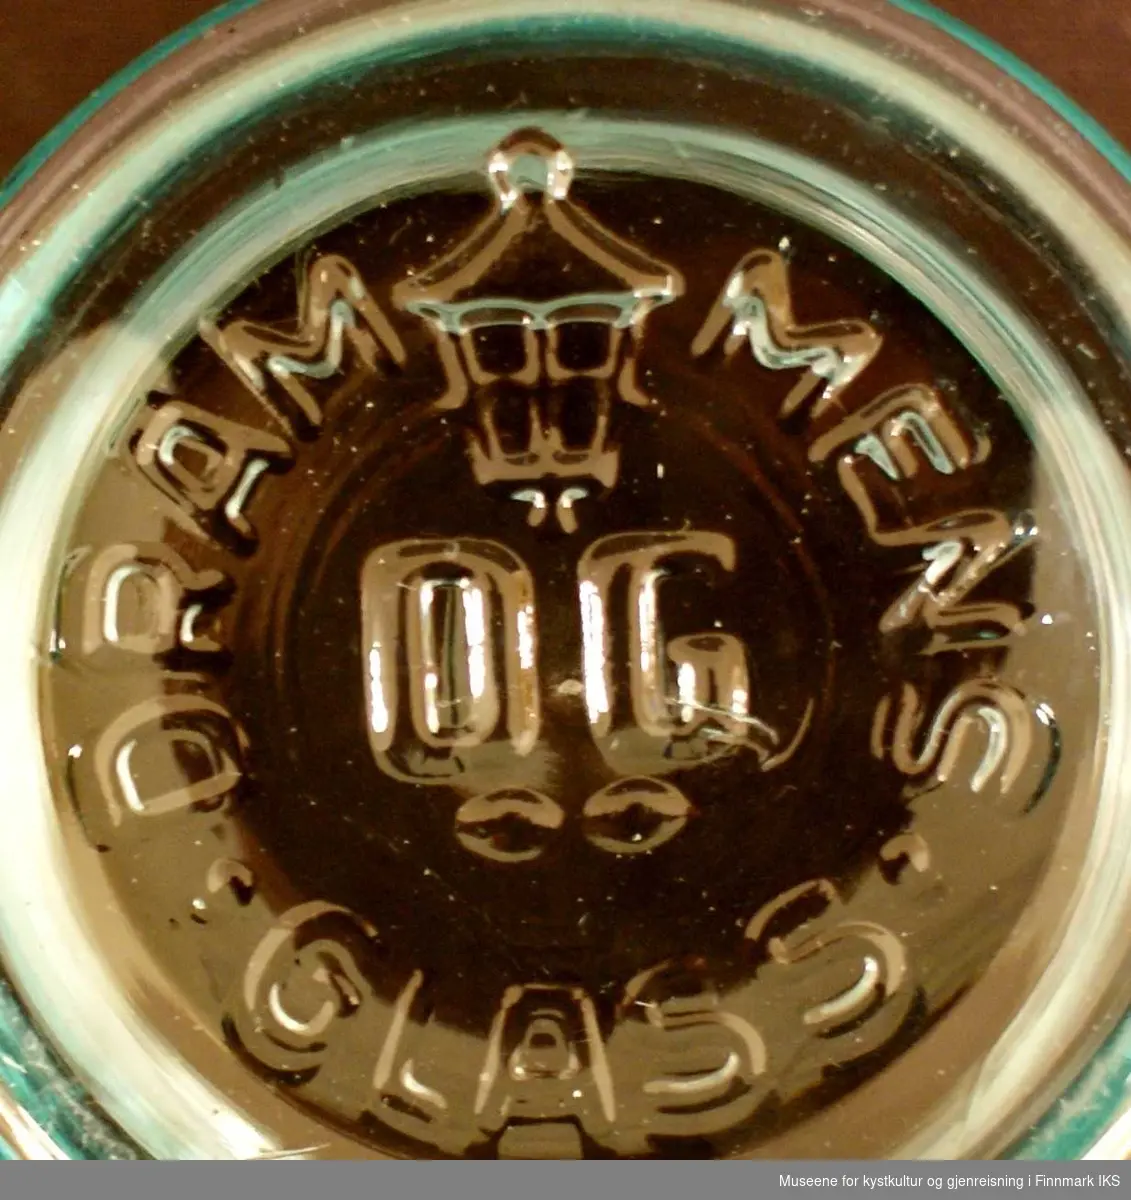 Både på lokket og på fremsiden av glasskrukken er detavbildet en stilisert løve. Løven står på bakbena og rekker frembena fremfor seg. Den er formet direkte i glasset, og er derfor blank. I bunnen av glasskrukken er det avbildet en lykt sammen med bokstavene DG, og dette er sannsynligvis logoen til Drammens Glass.